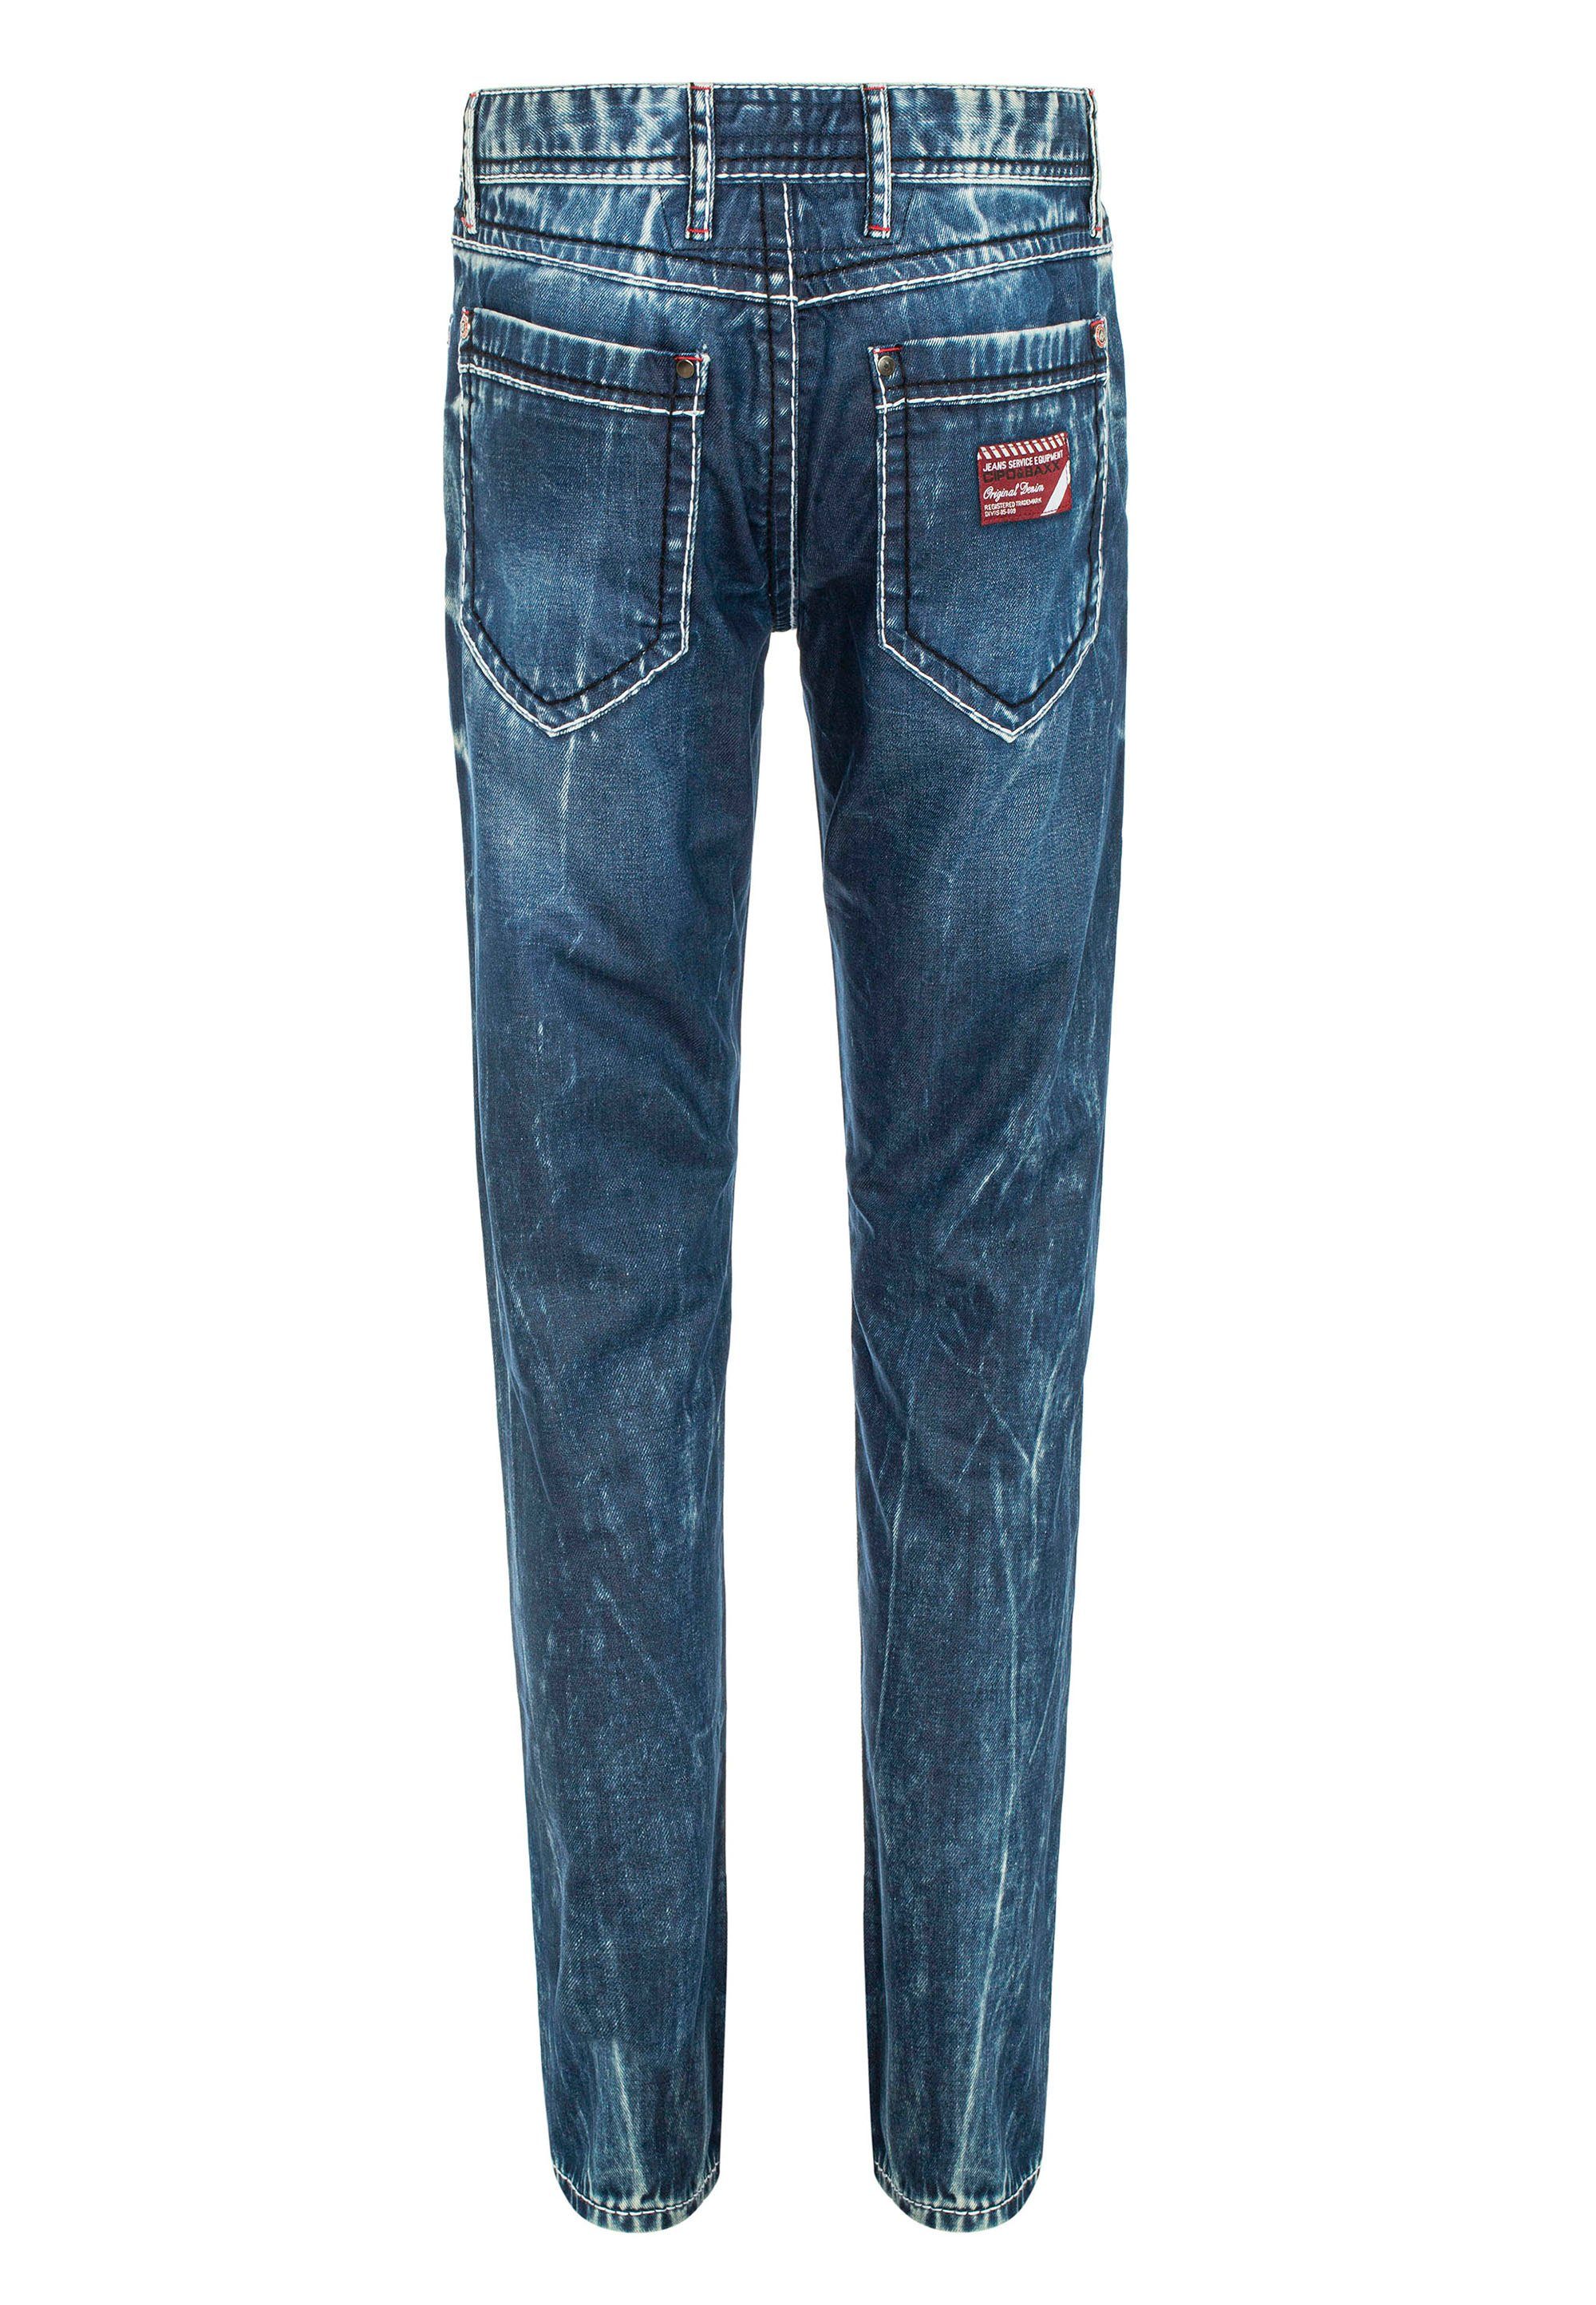 extravaganter Straight-Jeans Baxx & Cipo mit Waschung